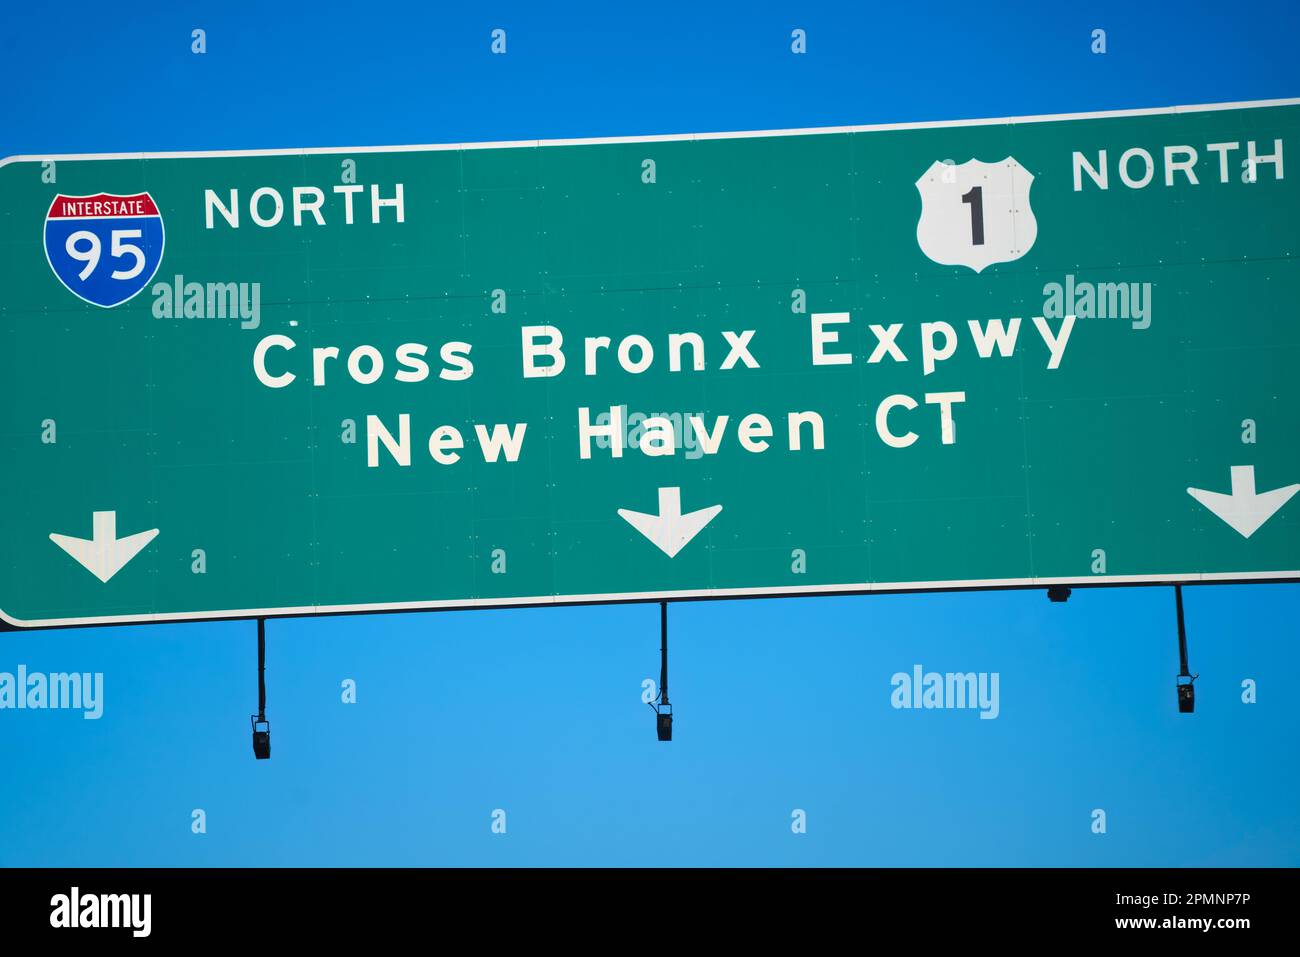 I-95 direzione nord, Route 1 direzione nord, attraversa Bronx Expressway fino a New Haven Connecticut. Precedentemente chiamata la strada più congestionata negli Stati Uniti. Foto Stock